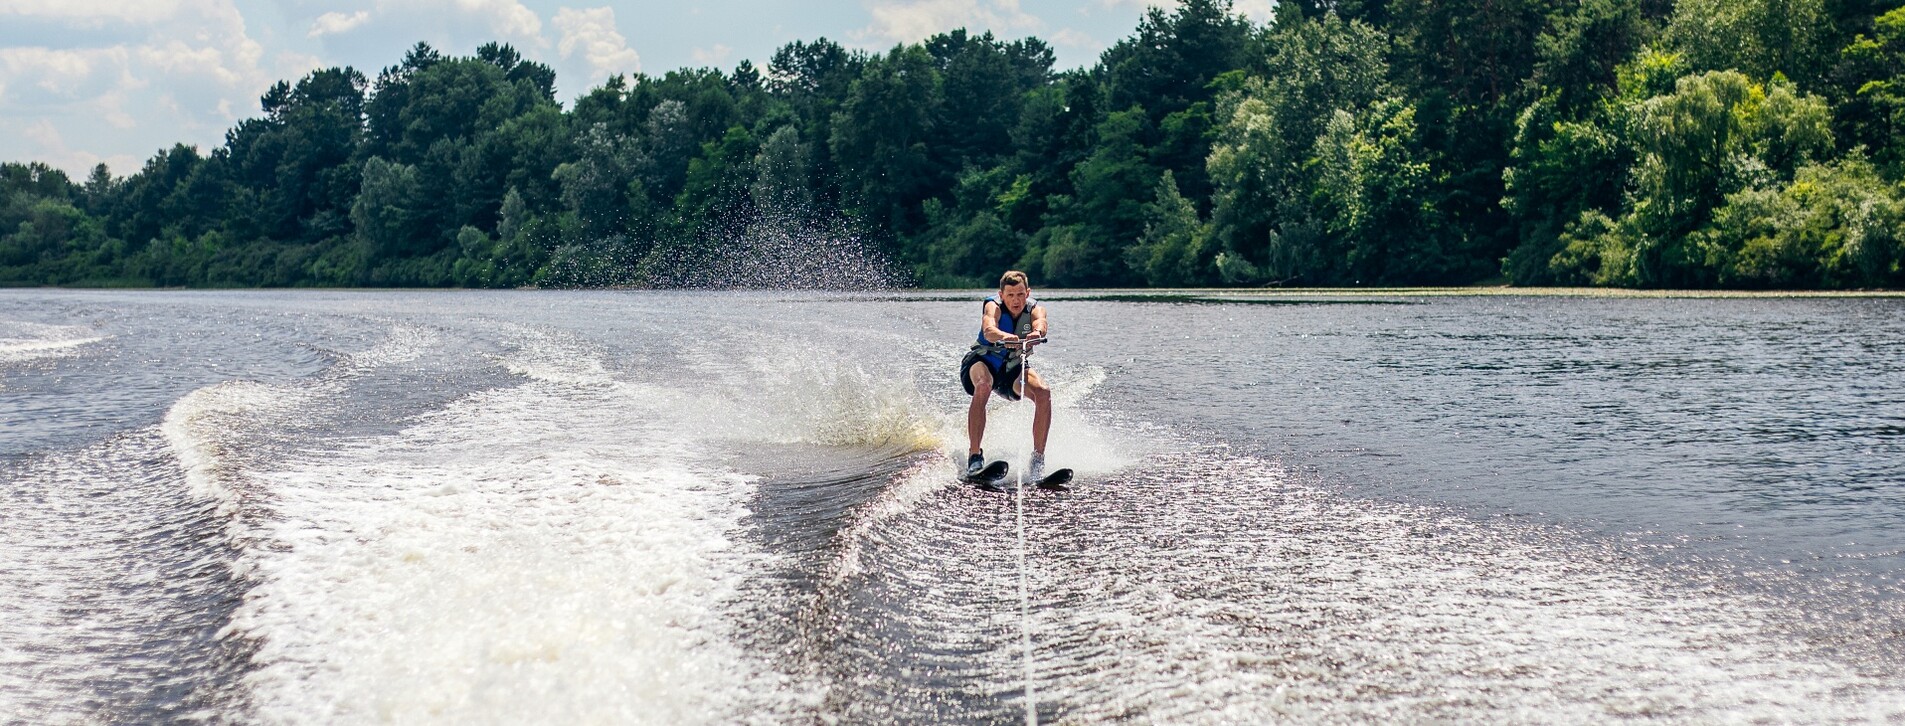 Фото 1 - Катание на водных лыжах